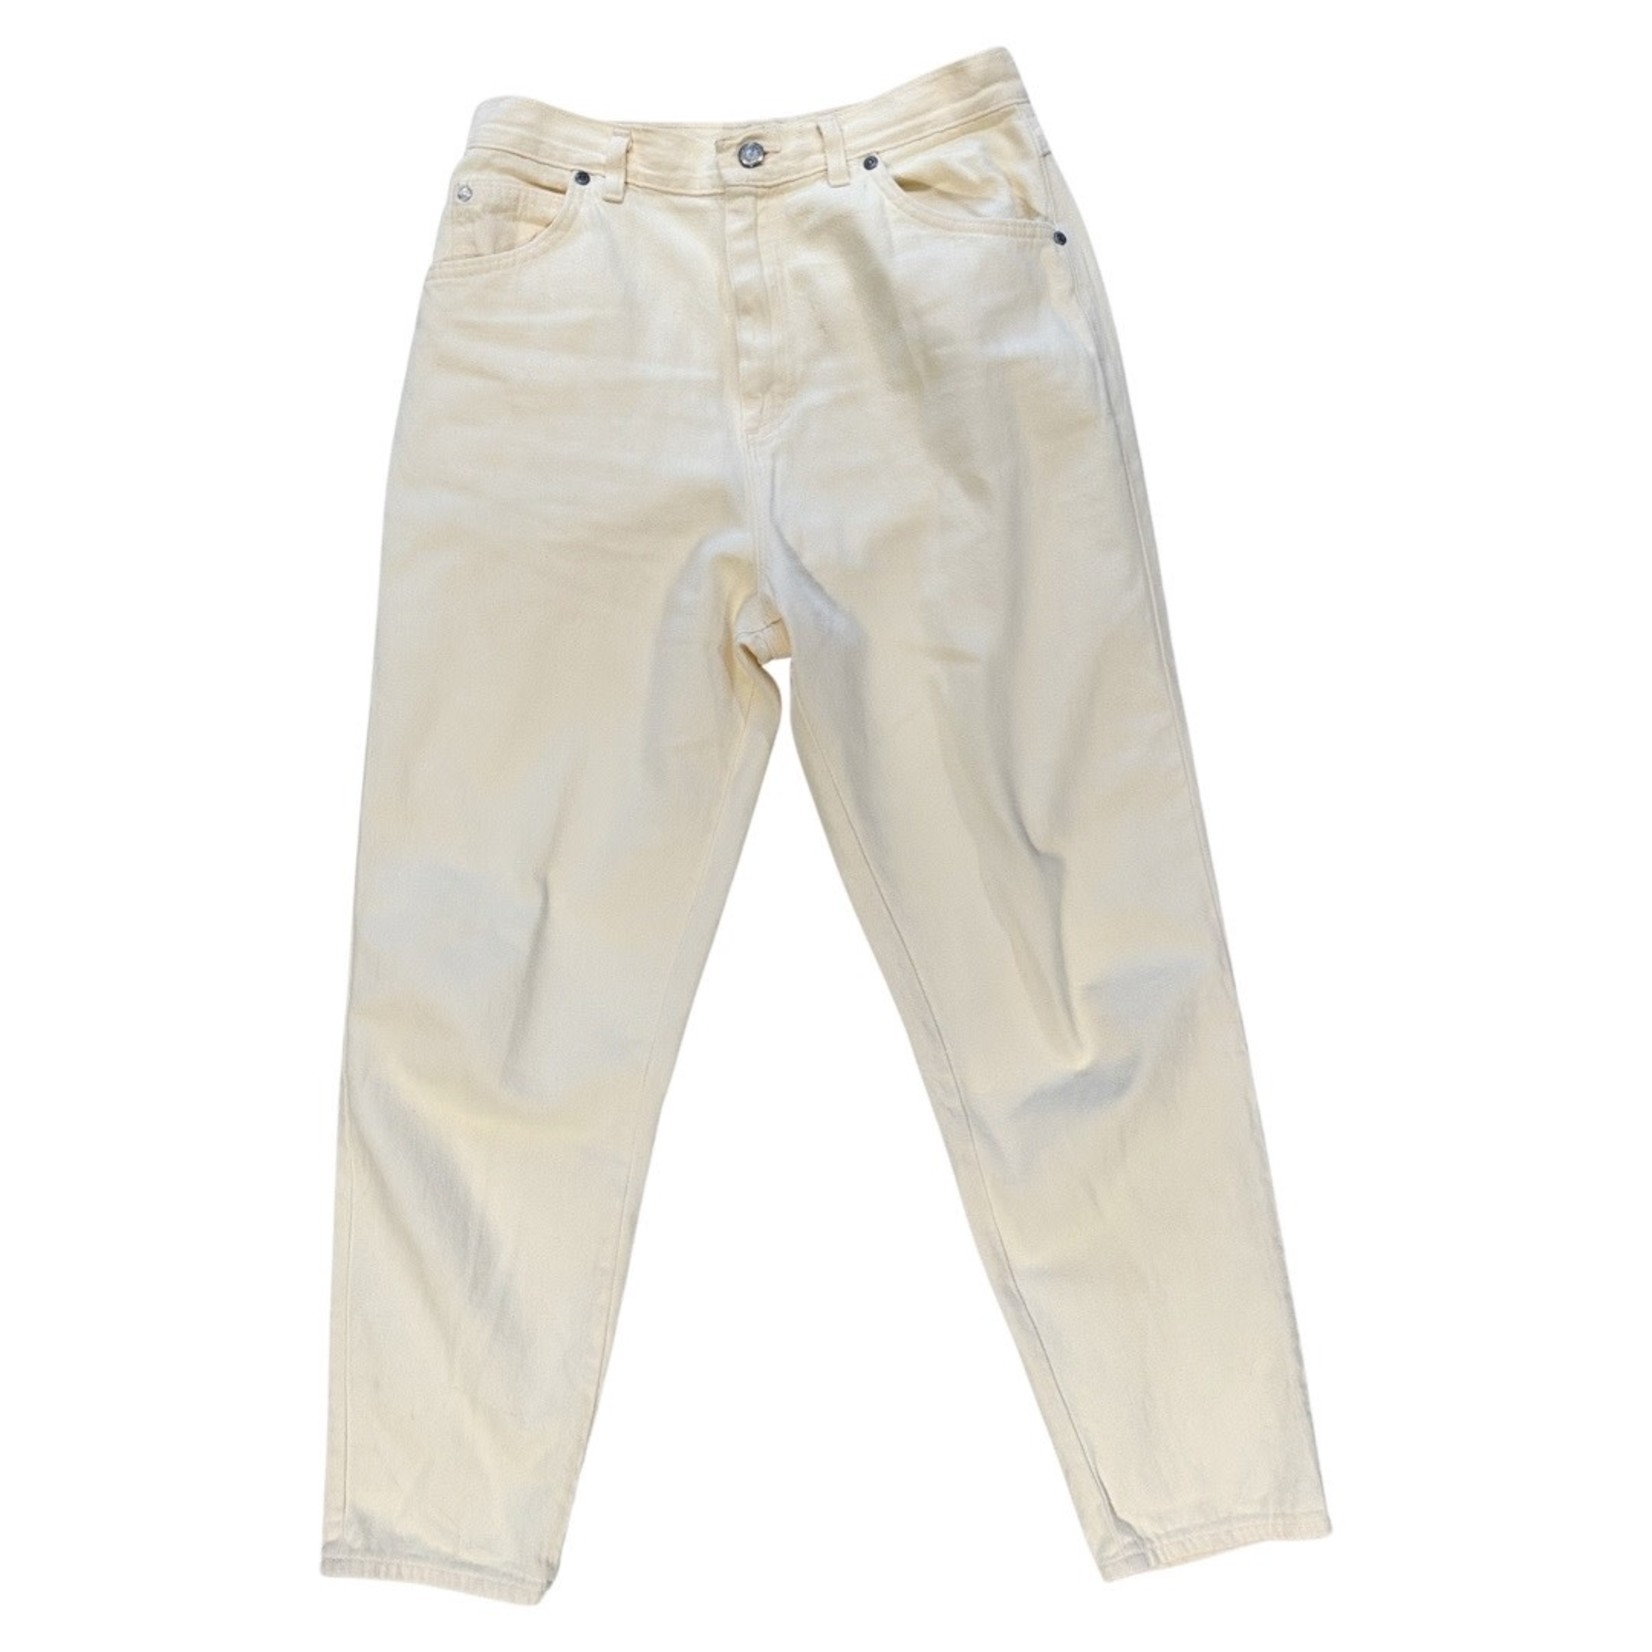 Vintage off white jeans size M/L